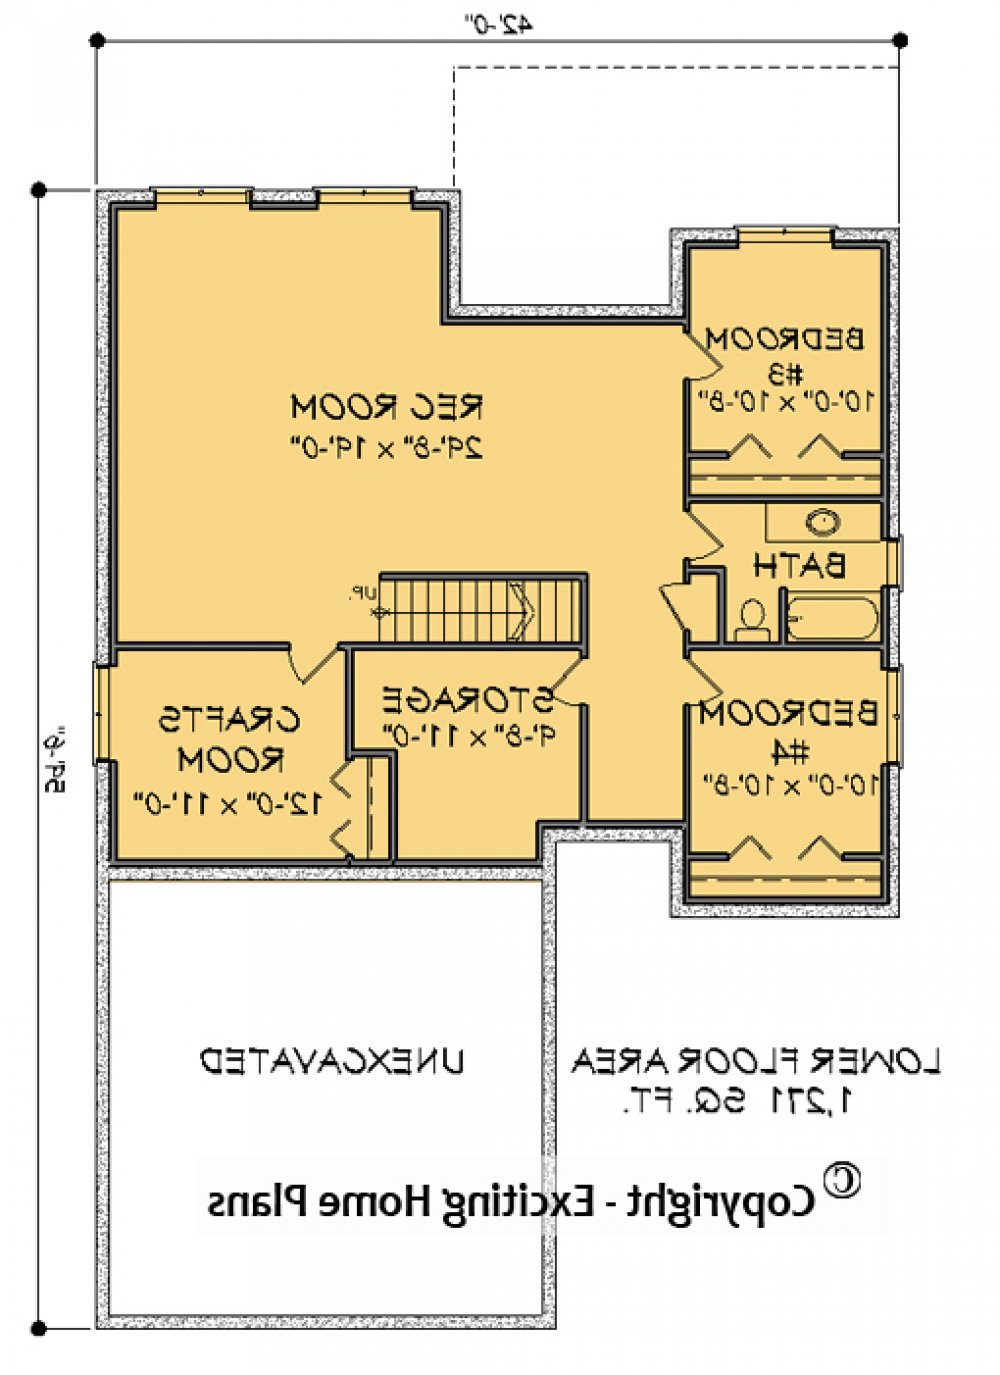 House Plan E1597 -10 Lower Floor Plan REVERSE